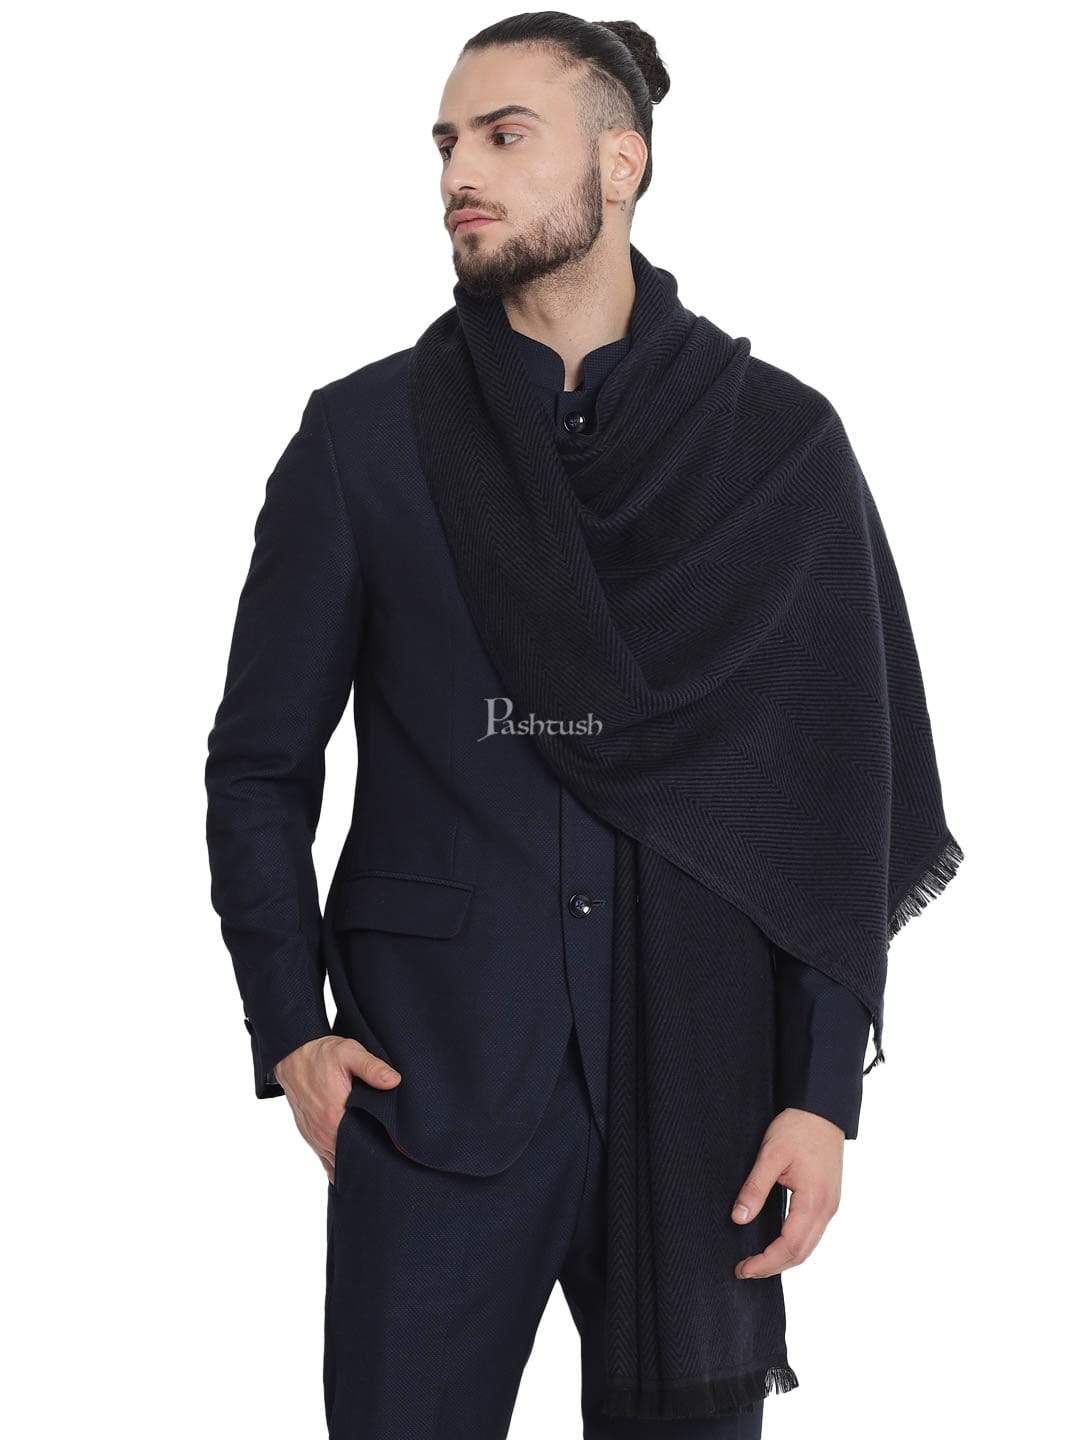 Pashtush India 100x200 Pashtush Mens Stole, Fine wool with paisley jacquard weave, Rich Black